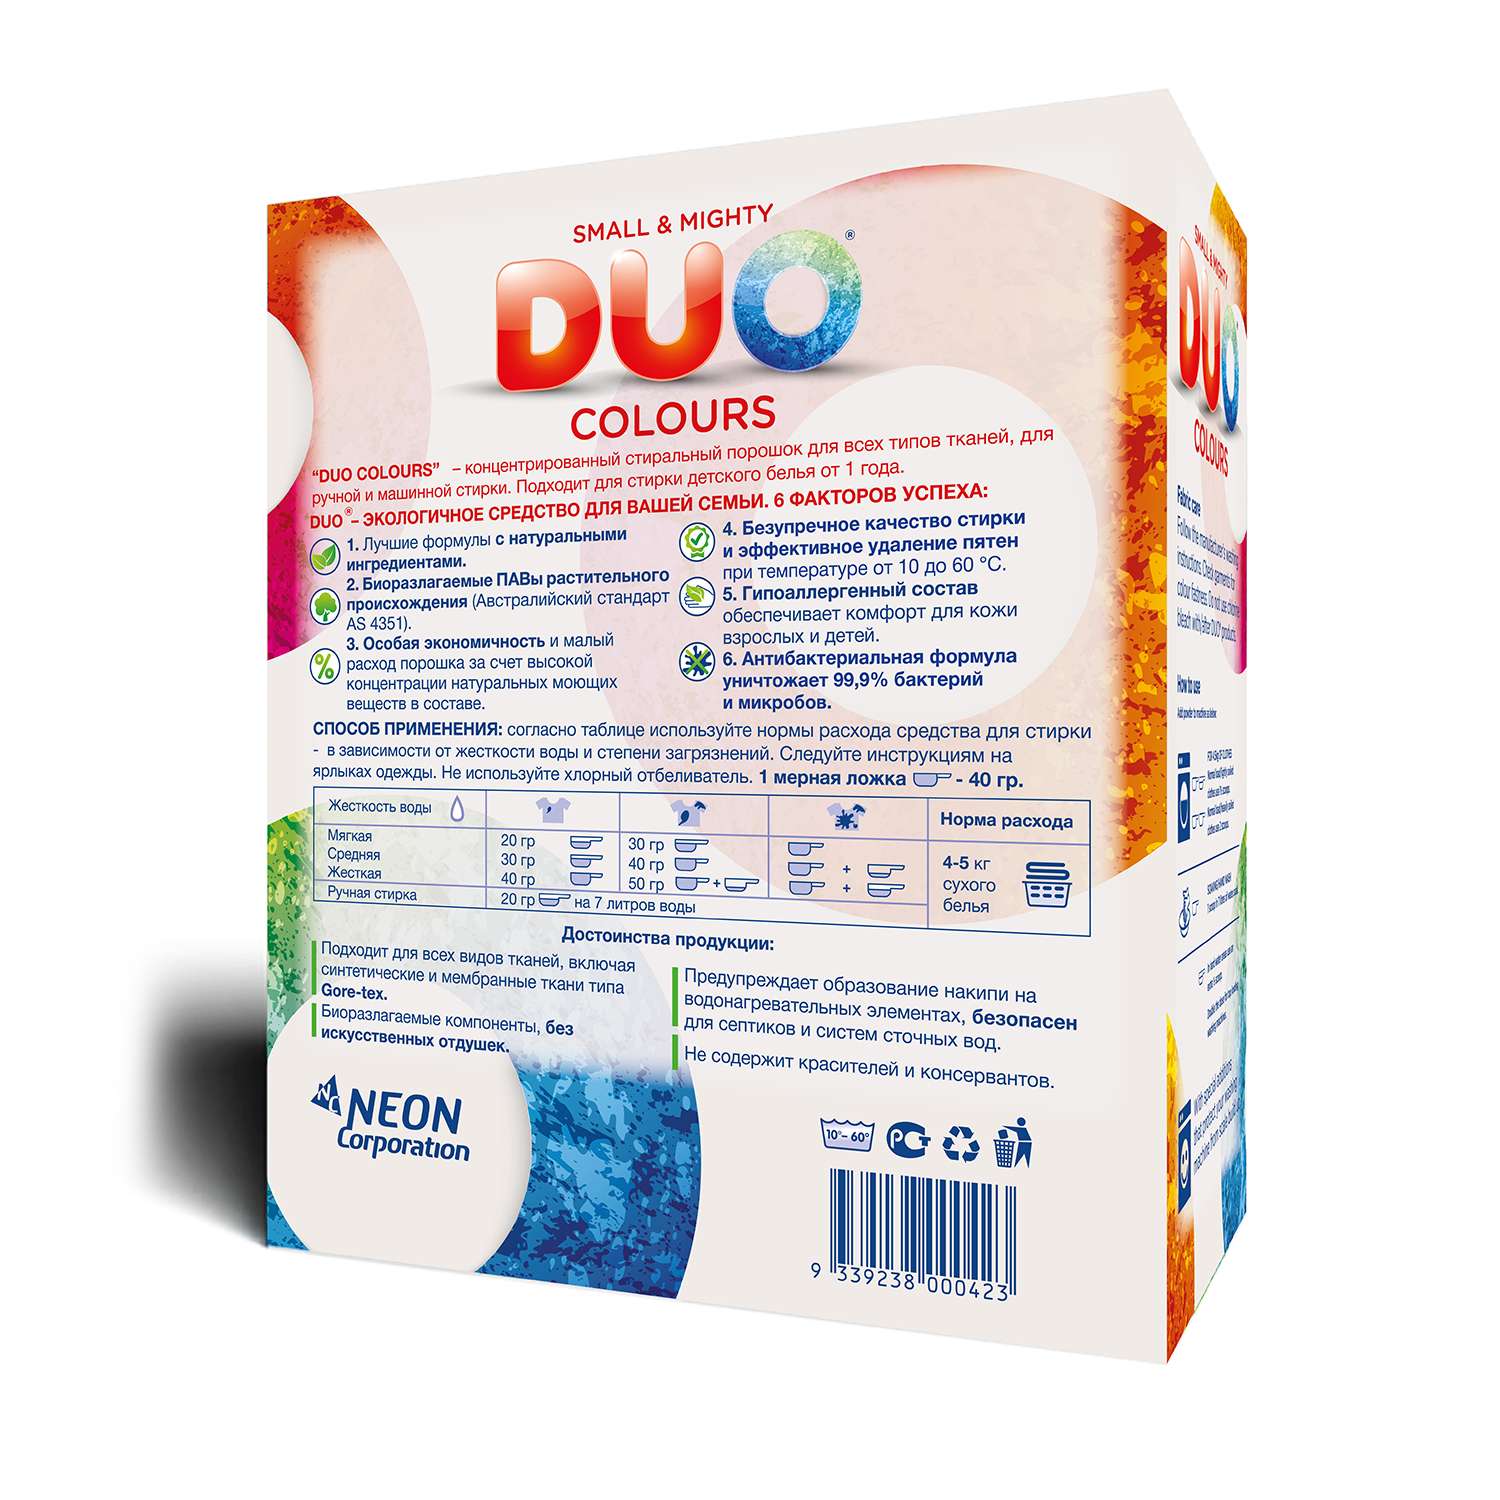 Стиральный порошок DUO Colours гипоаллергенный ЭКОлогичный концентрированный для цветного белья 1000 г 35 стирок - фото 4